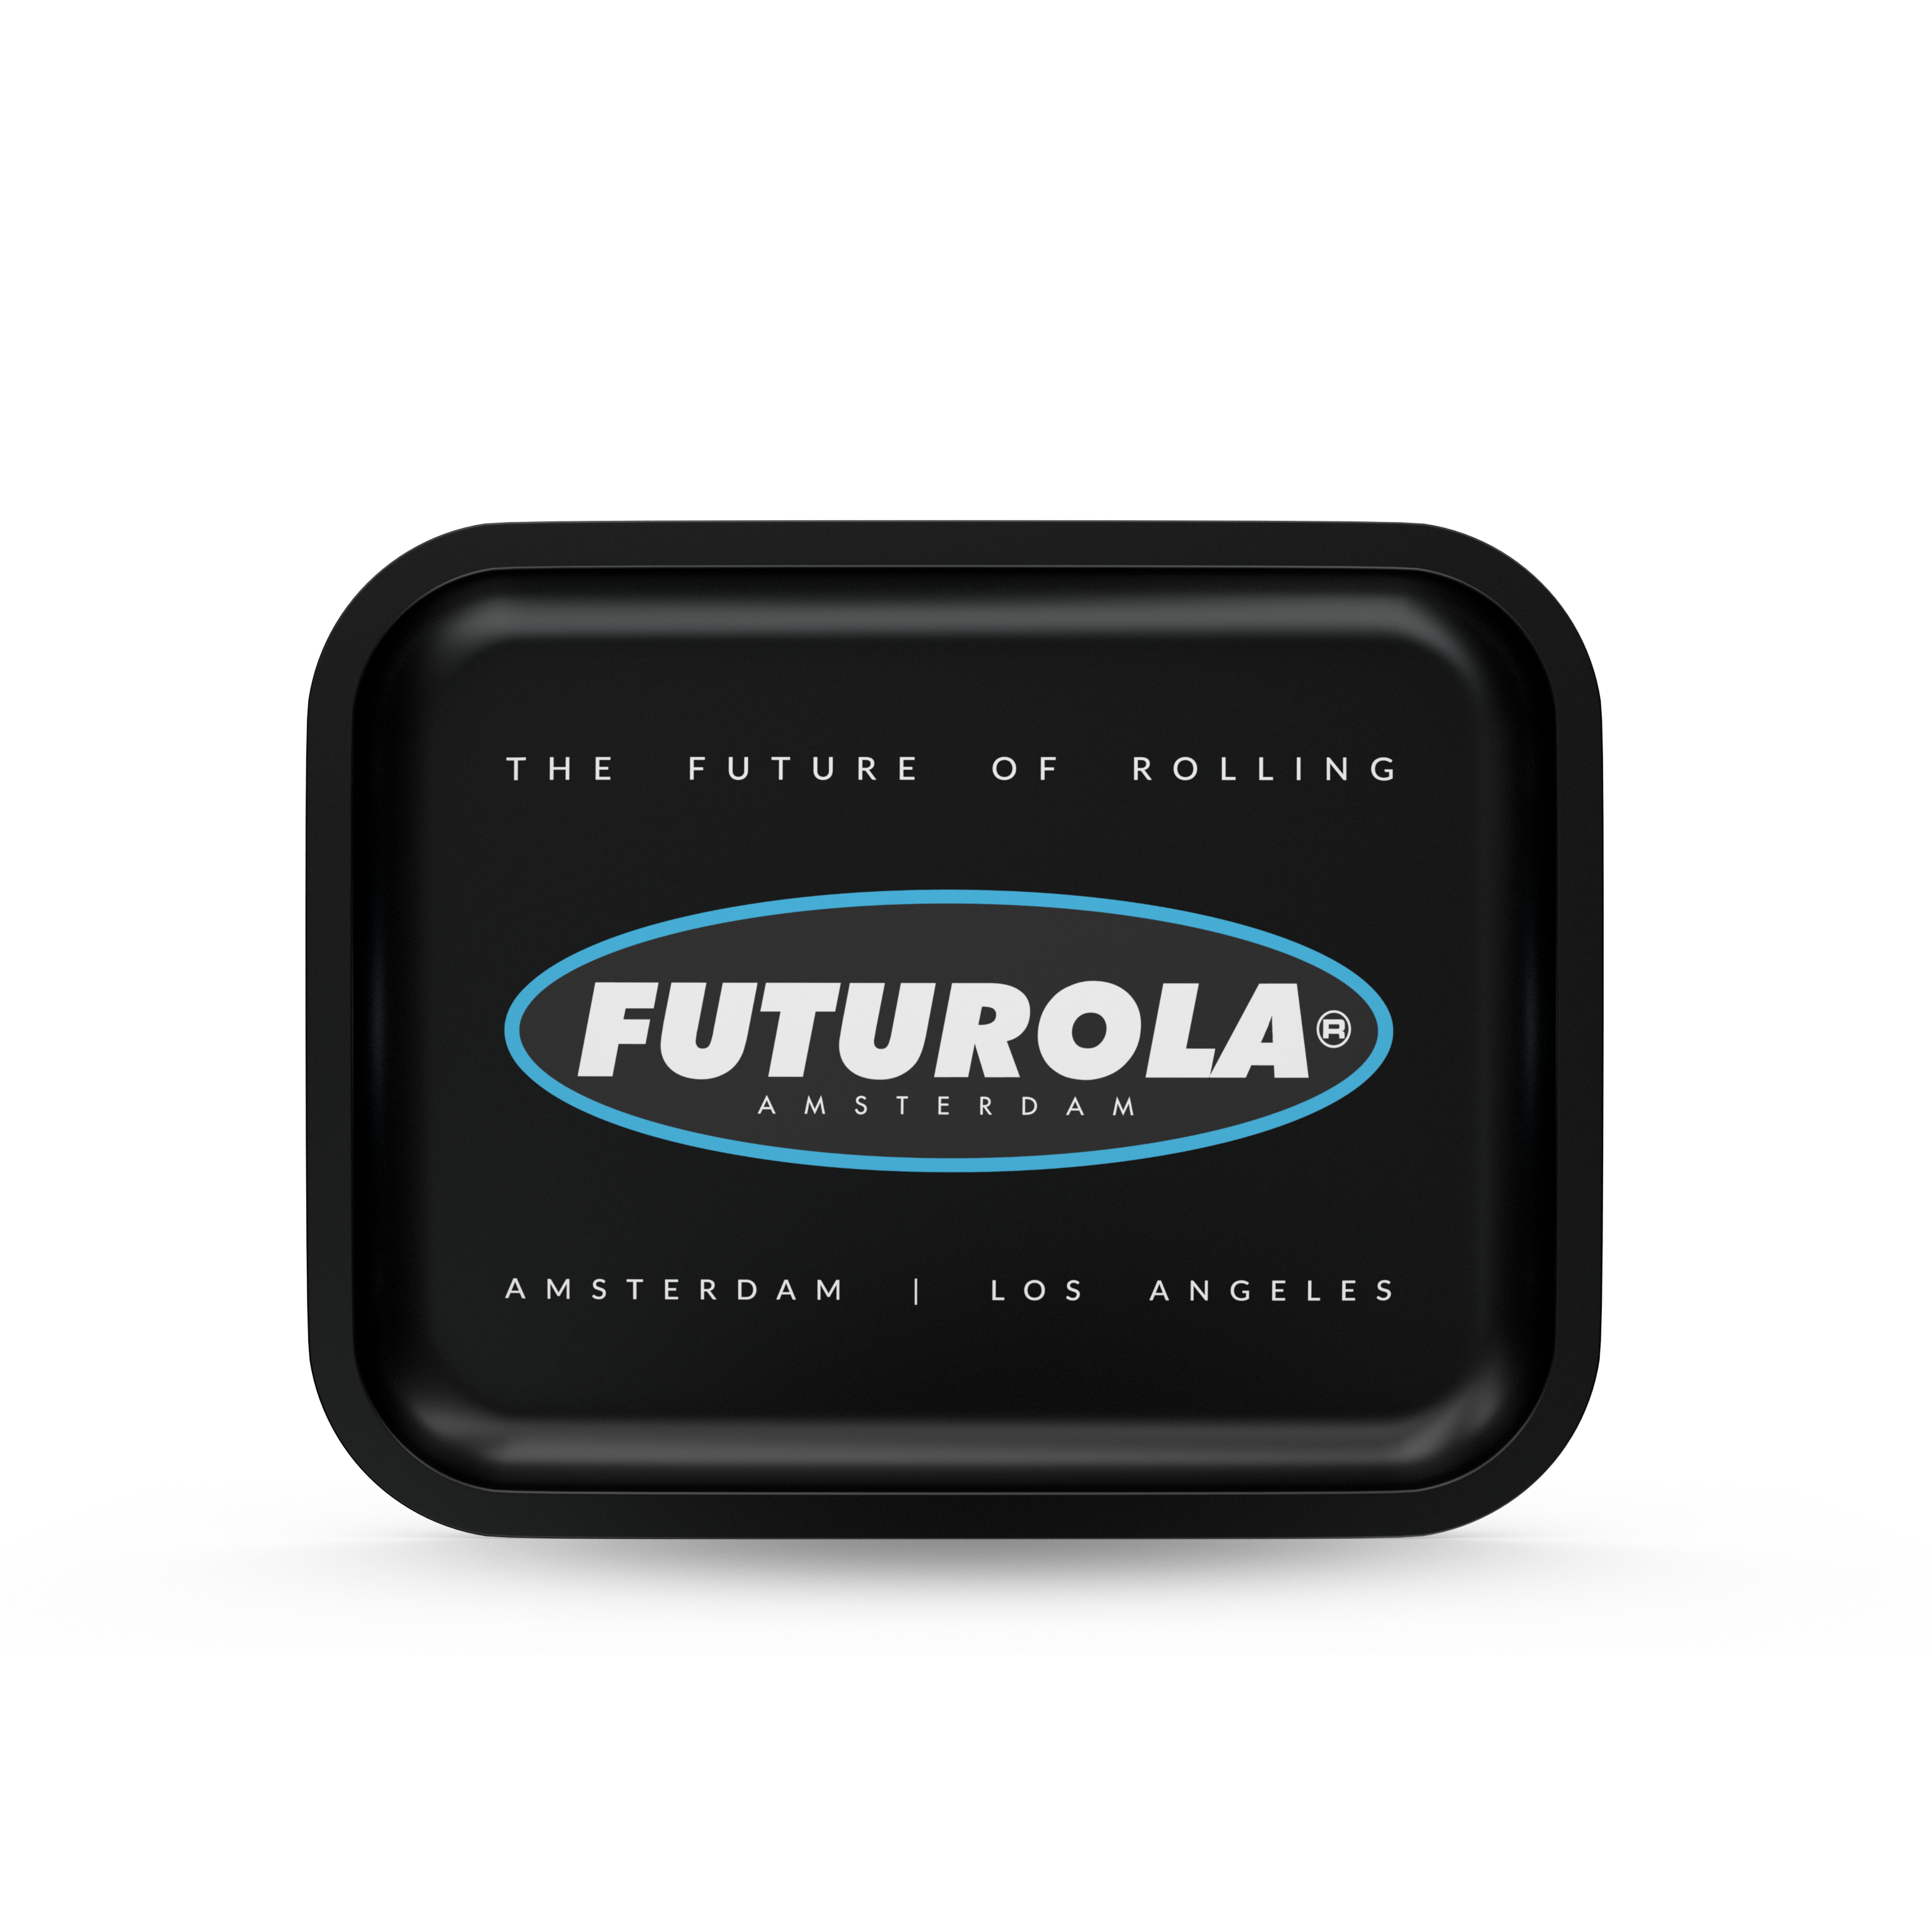 FUTUROLA LARGE BLACK ROLLING TRAY [Wholesale] - FUTUROLA